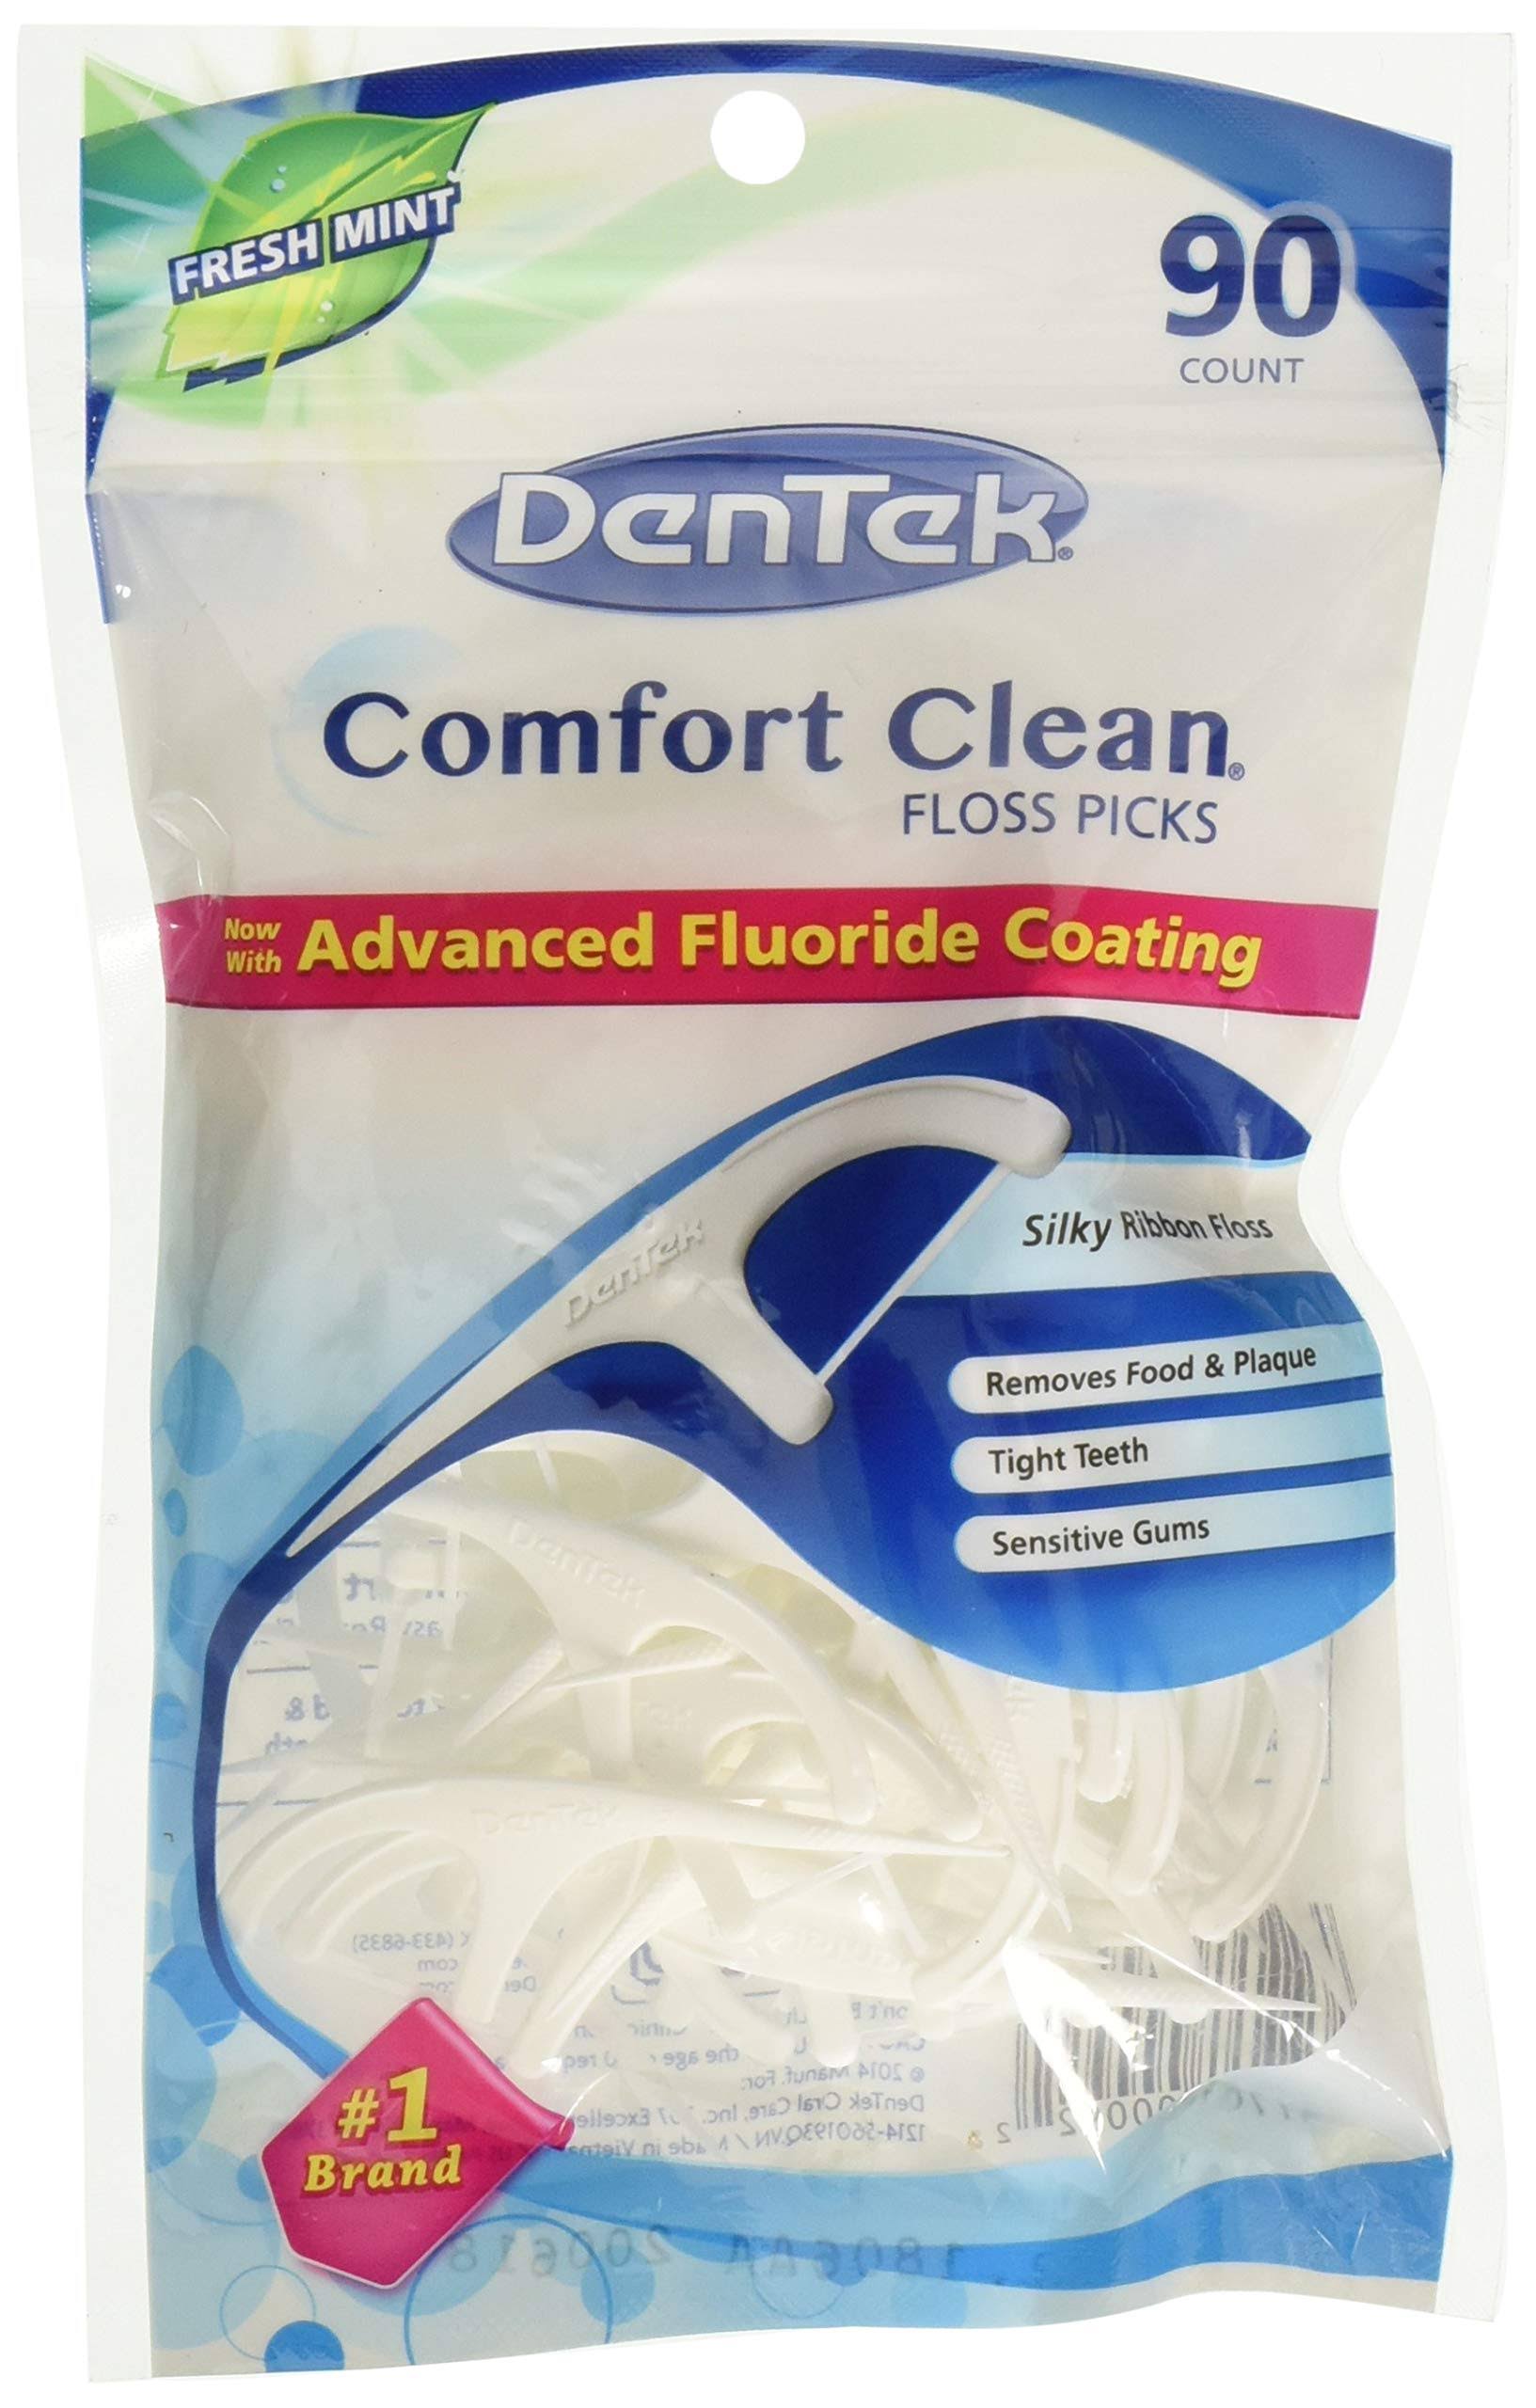 DenTek Comfort Clean Silk Floss Picks - Fresh Mint, 90ct